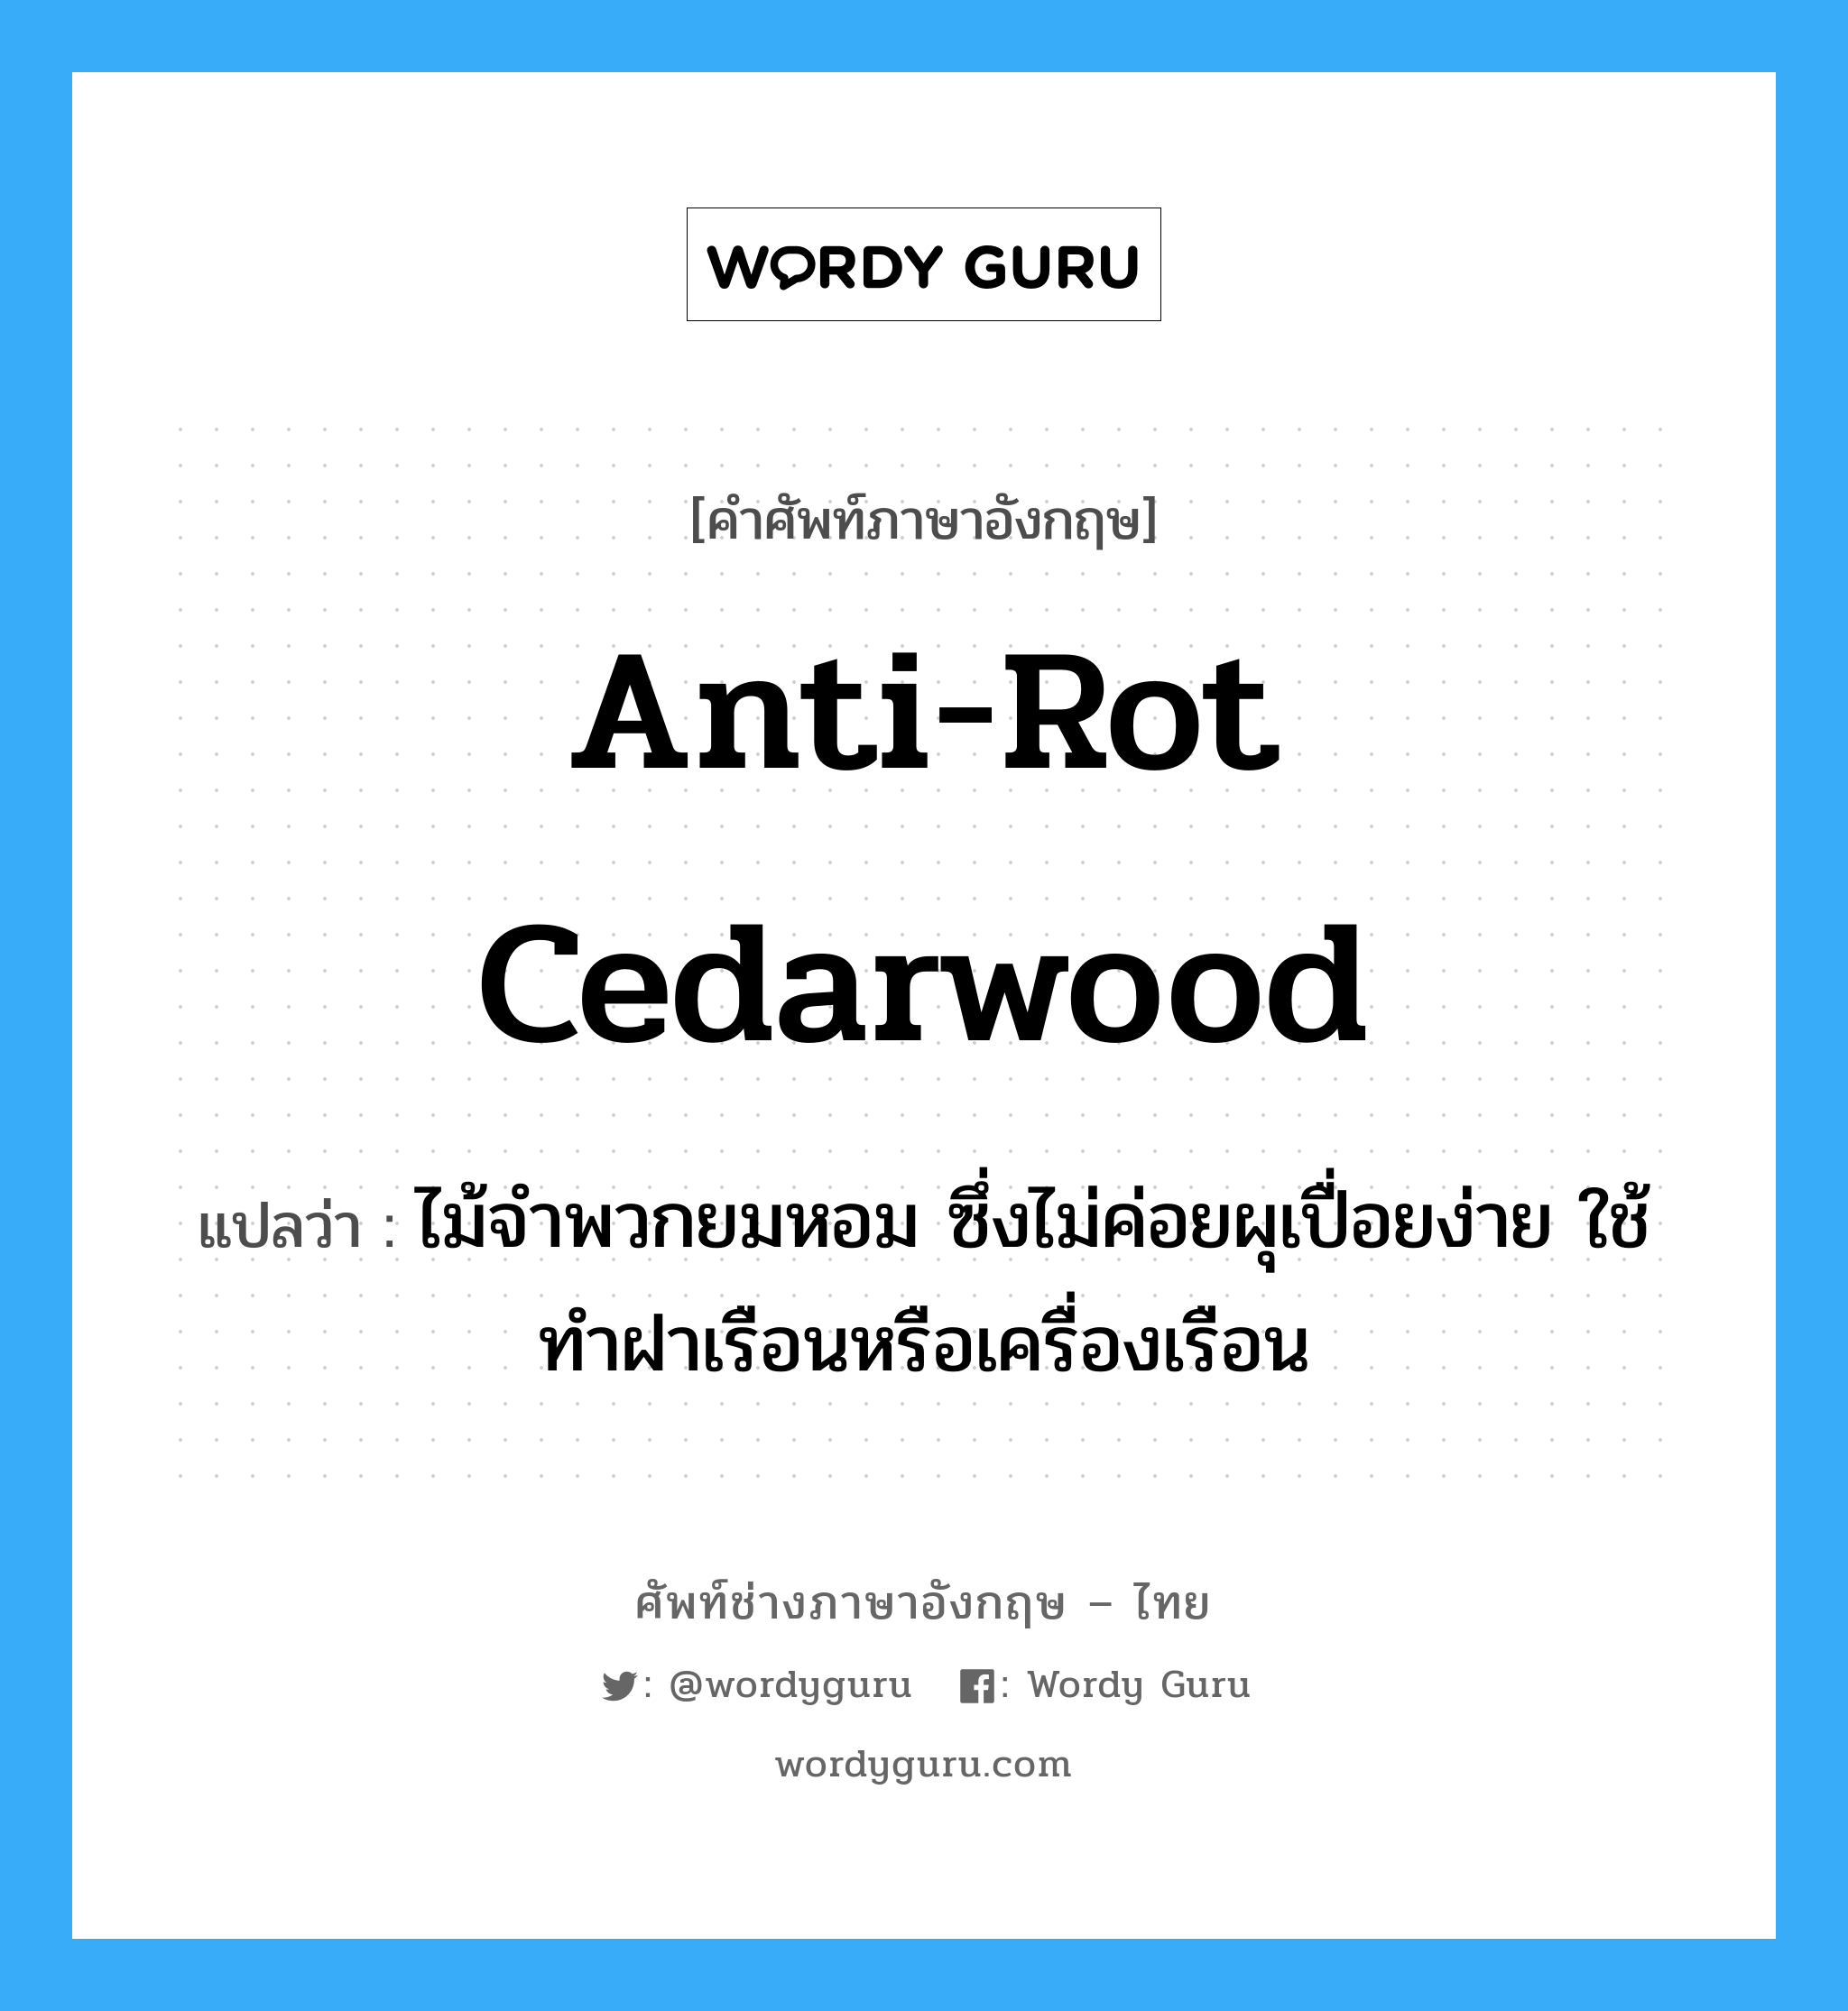 anti-rot cedarwood แปลว่า?, คำศัพท์ช่างภาษาอังกฤษ - ไทย anti-rot cedarwood คำศัพท์ภาษาอังกฤษ anti-rot cedarwood แปลว่า ไม้จำพวกยมหอม ซึ่งไม่ค่อยผุเปื่อยง่าย ใช้ทำฝาเรือนหรือเครื่องเรือน